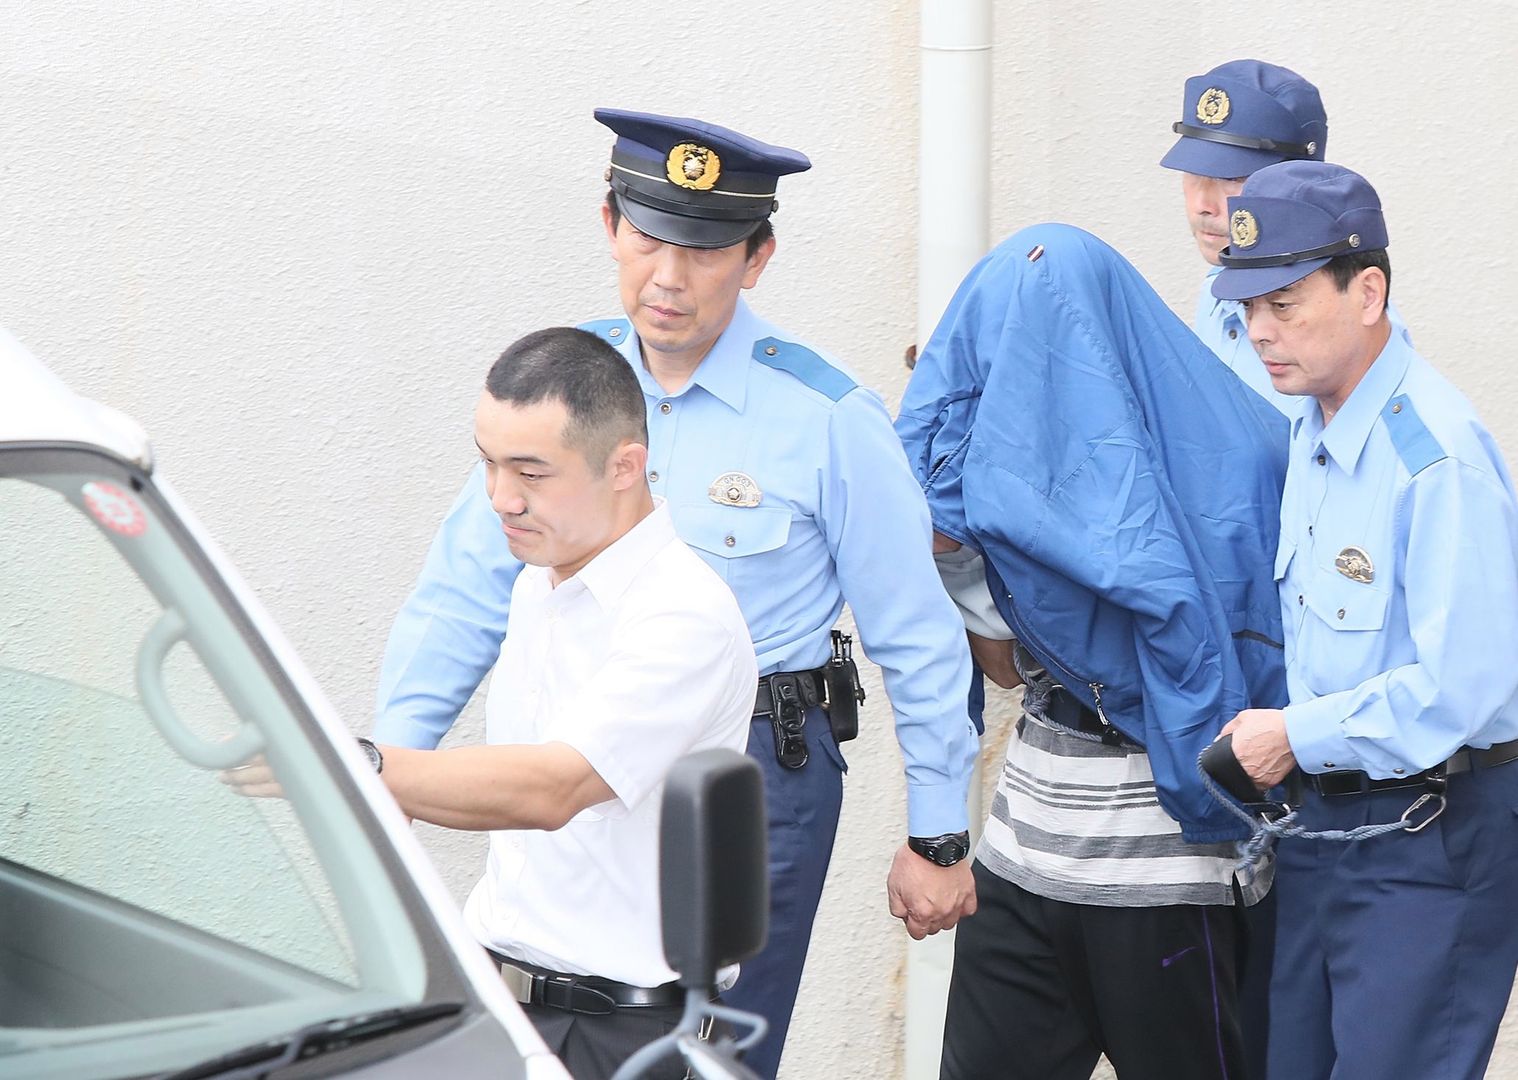 Japonia, Tokio. Satoshi Uematsu prowadzony przez policję.